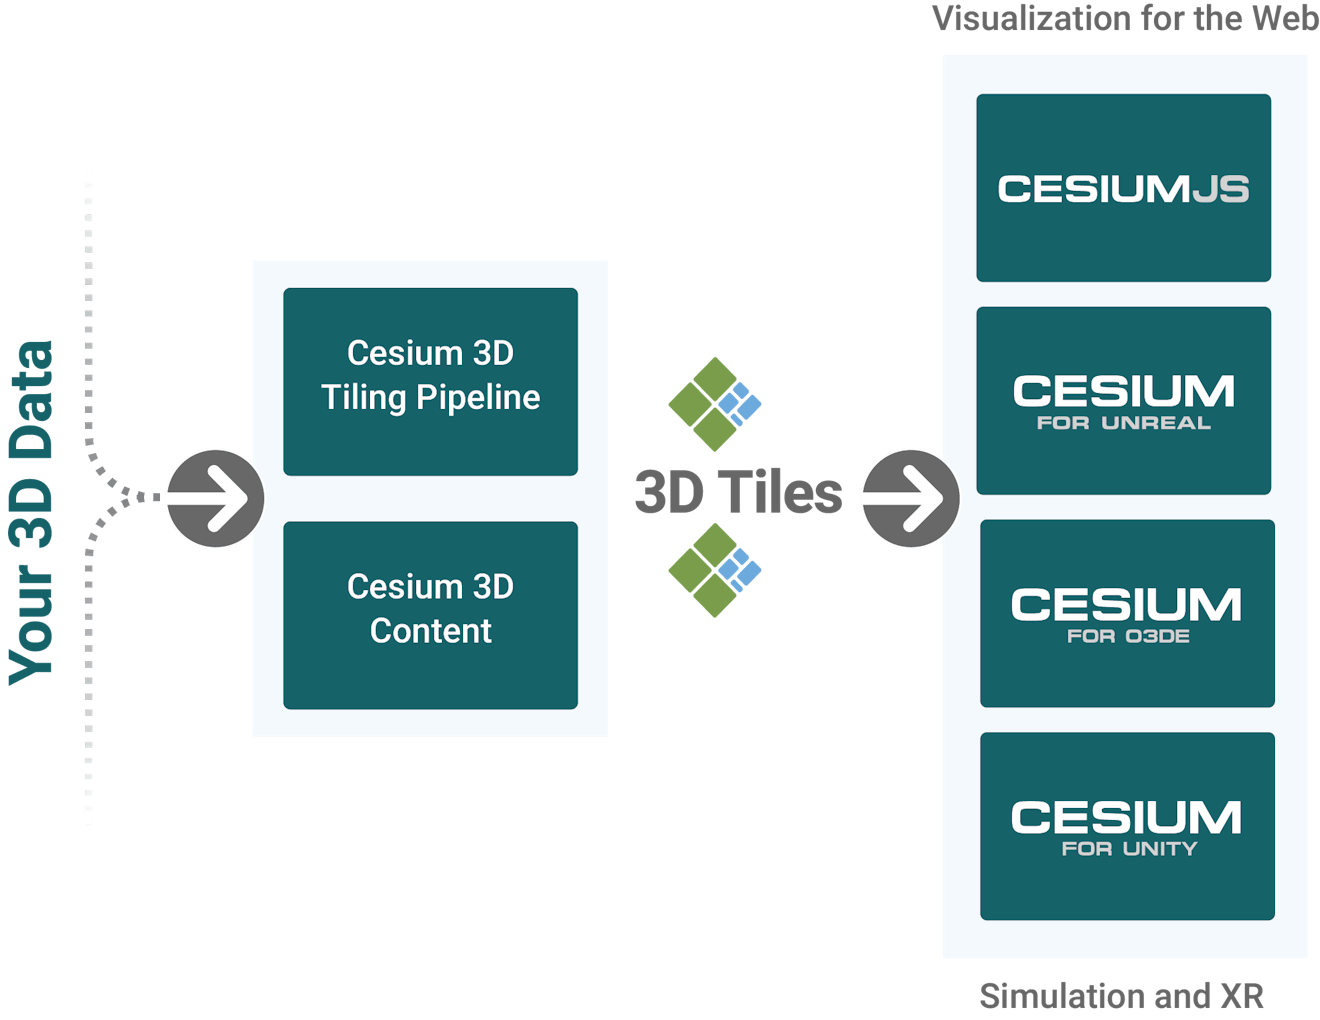 Cesium product ecosystem diagram